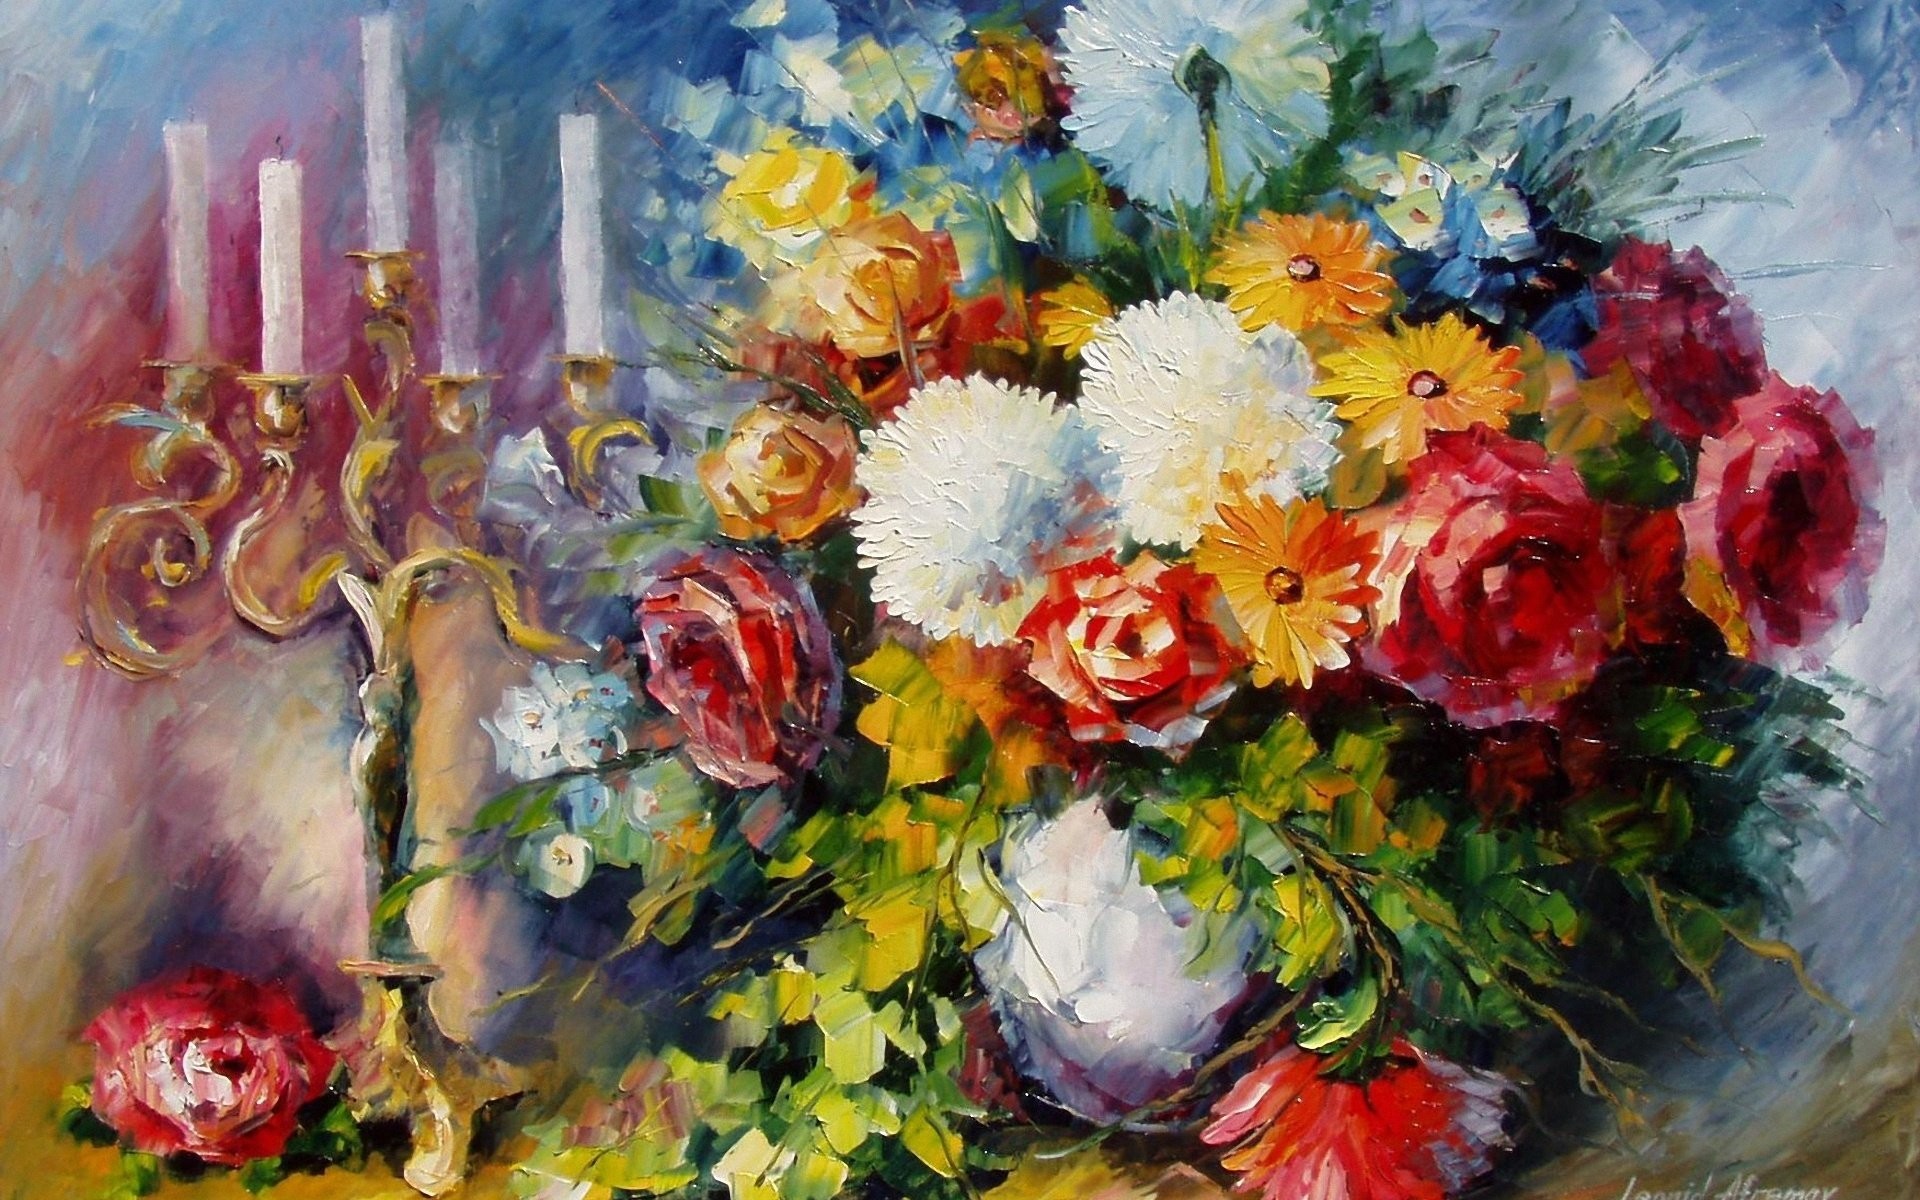 Leonid Afremov Vase Of Flowers , HD Wallpaper & Backgrounds